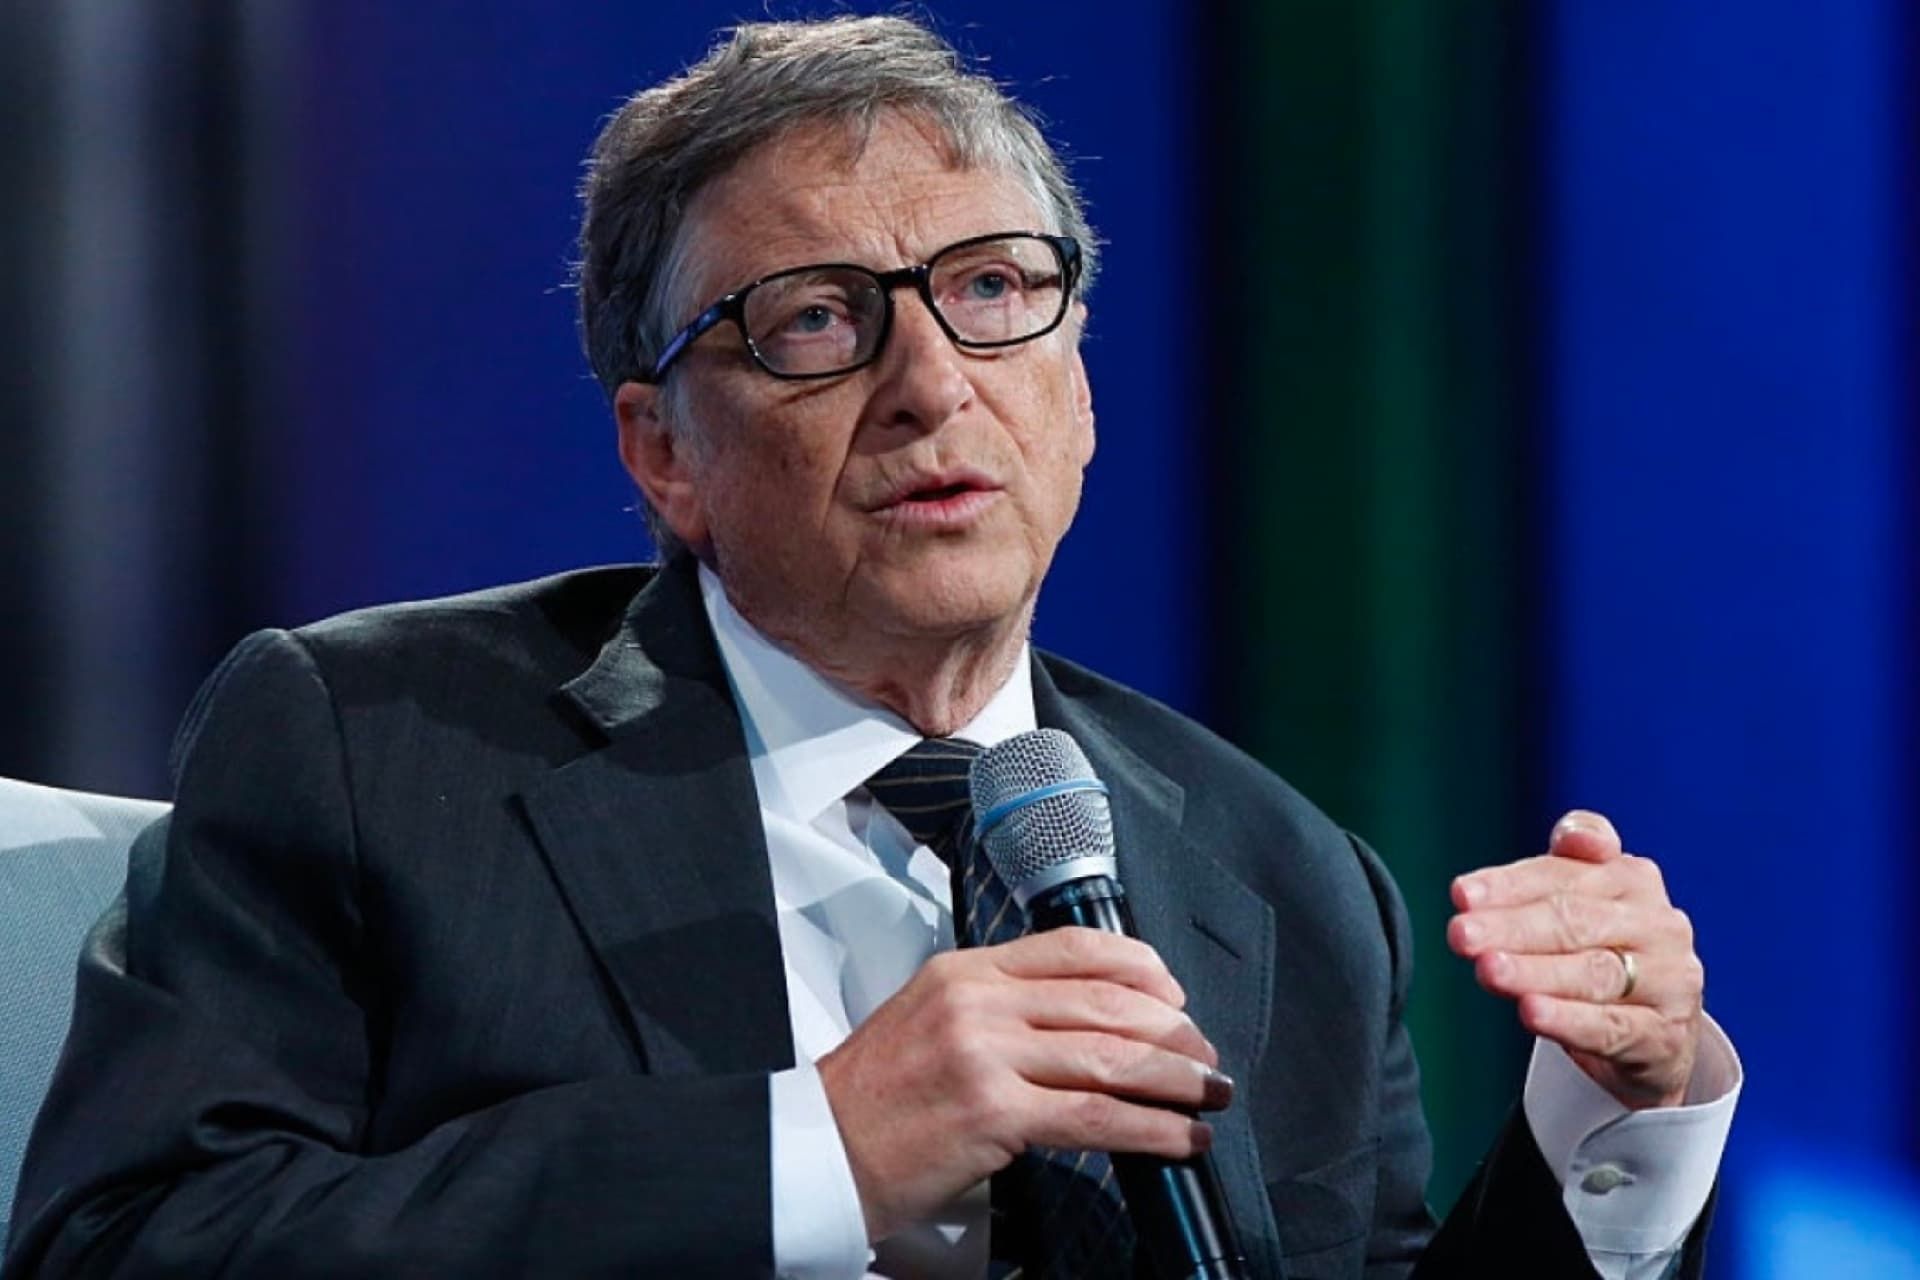 بیل گیتس / Bill Gates با کت شلوار و میکروفون